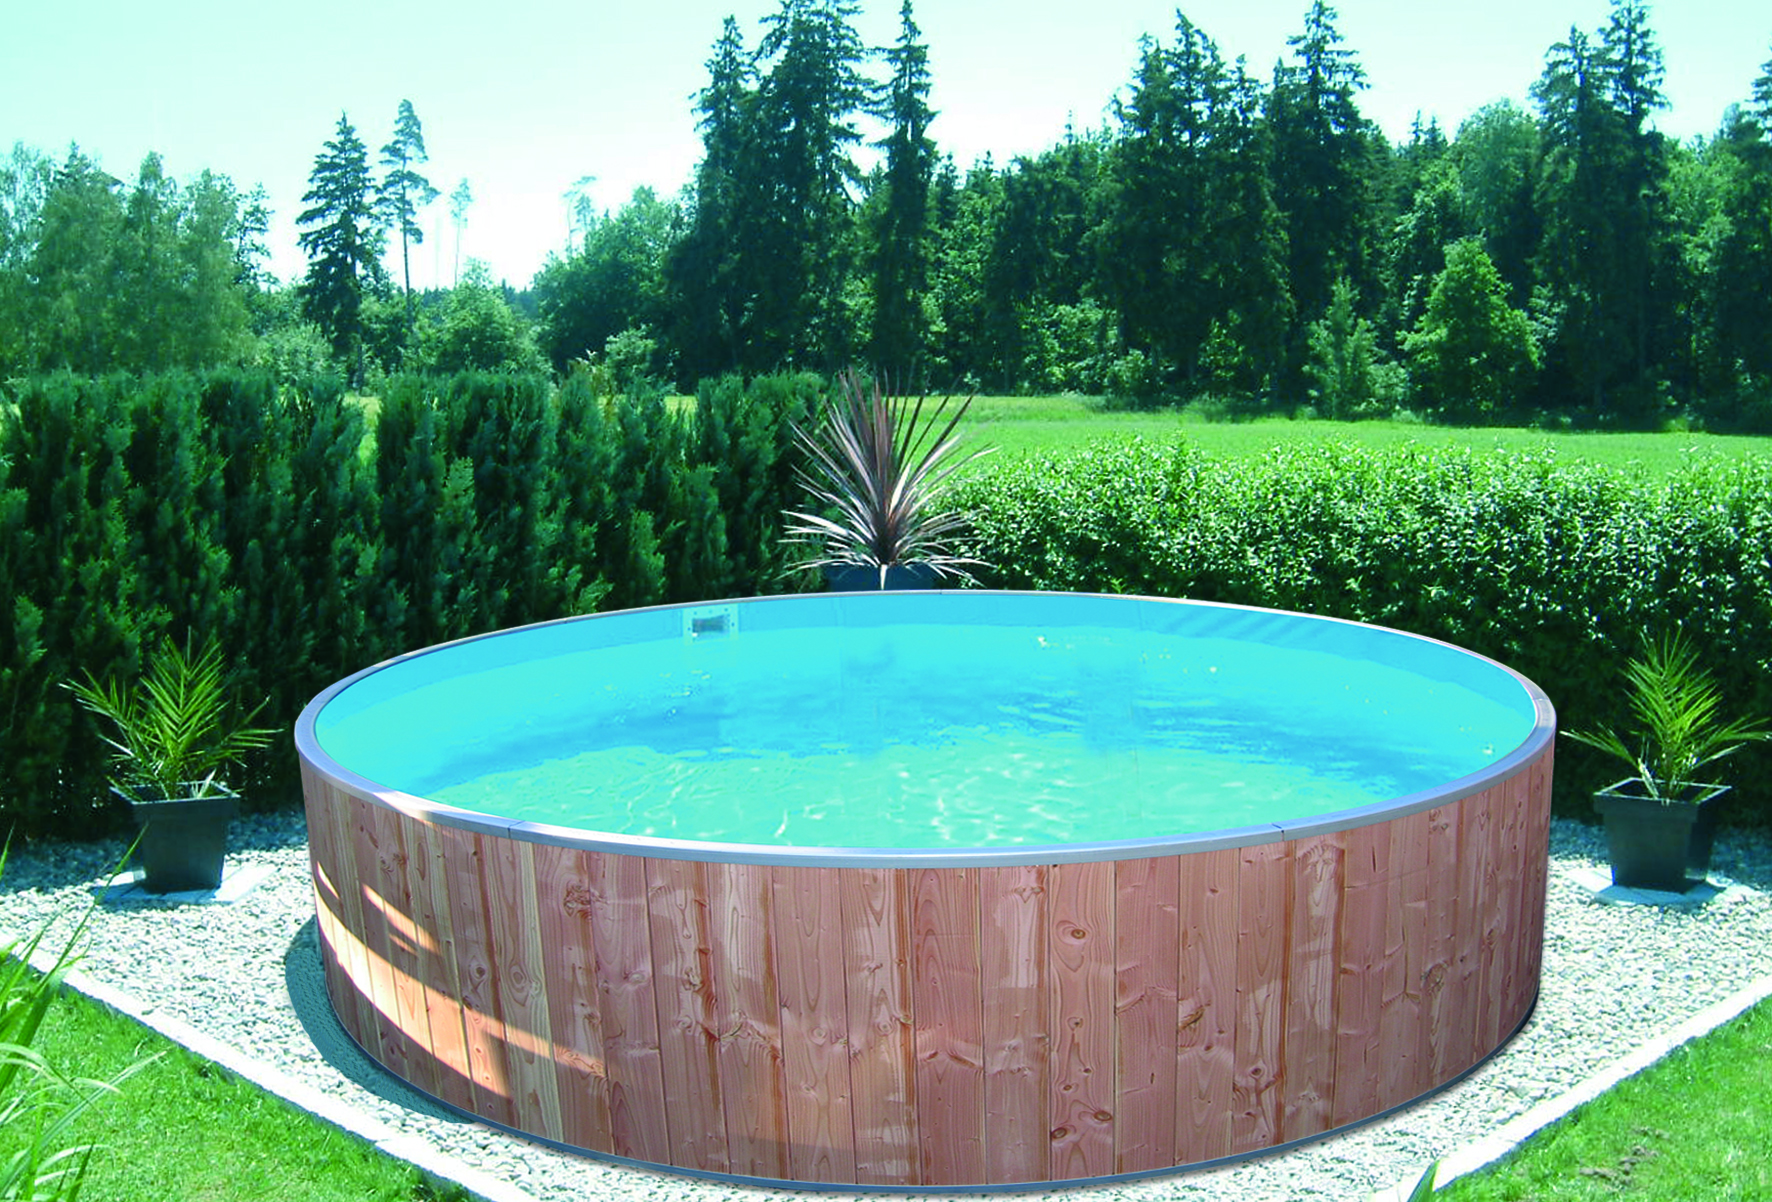 Pool round. Каркасный бассейн Интекс ландшафт. Каркасный бассейн Обделанный деревом. Каркасный бассейн Лагуна. Бассейн отделанный деревом.